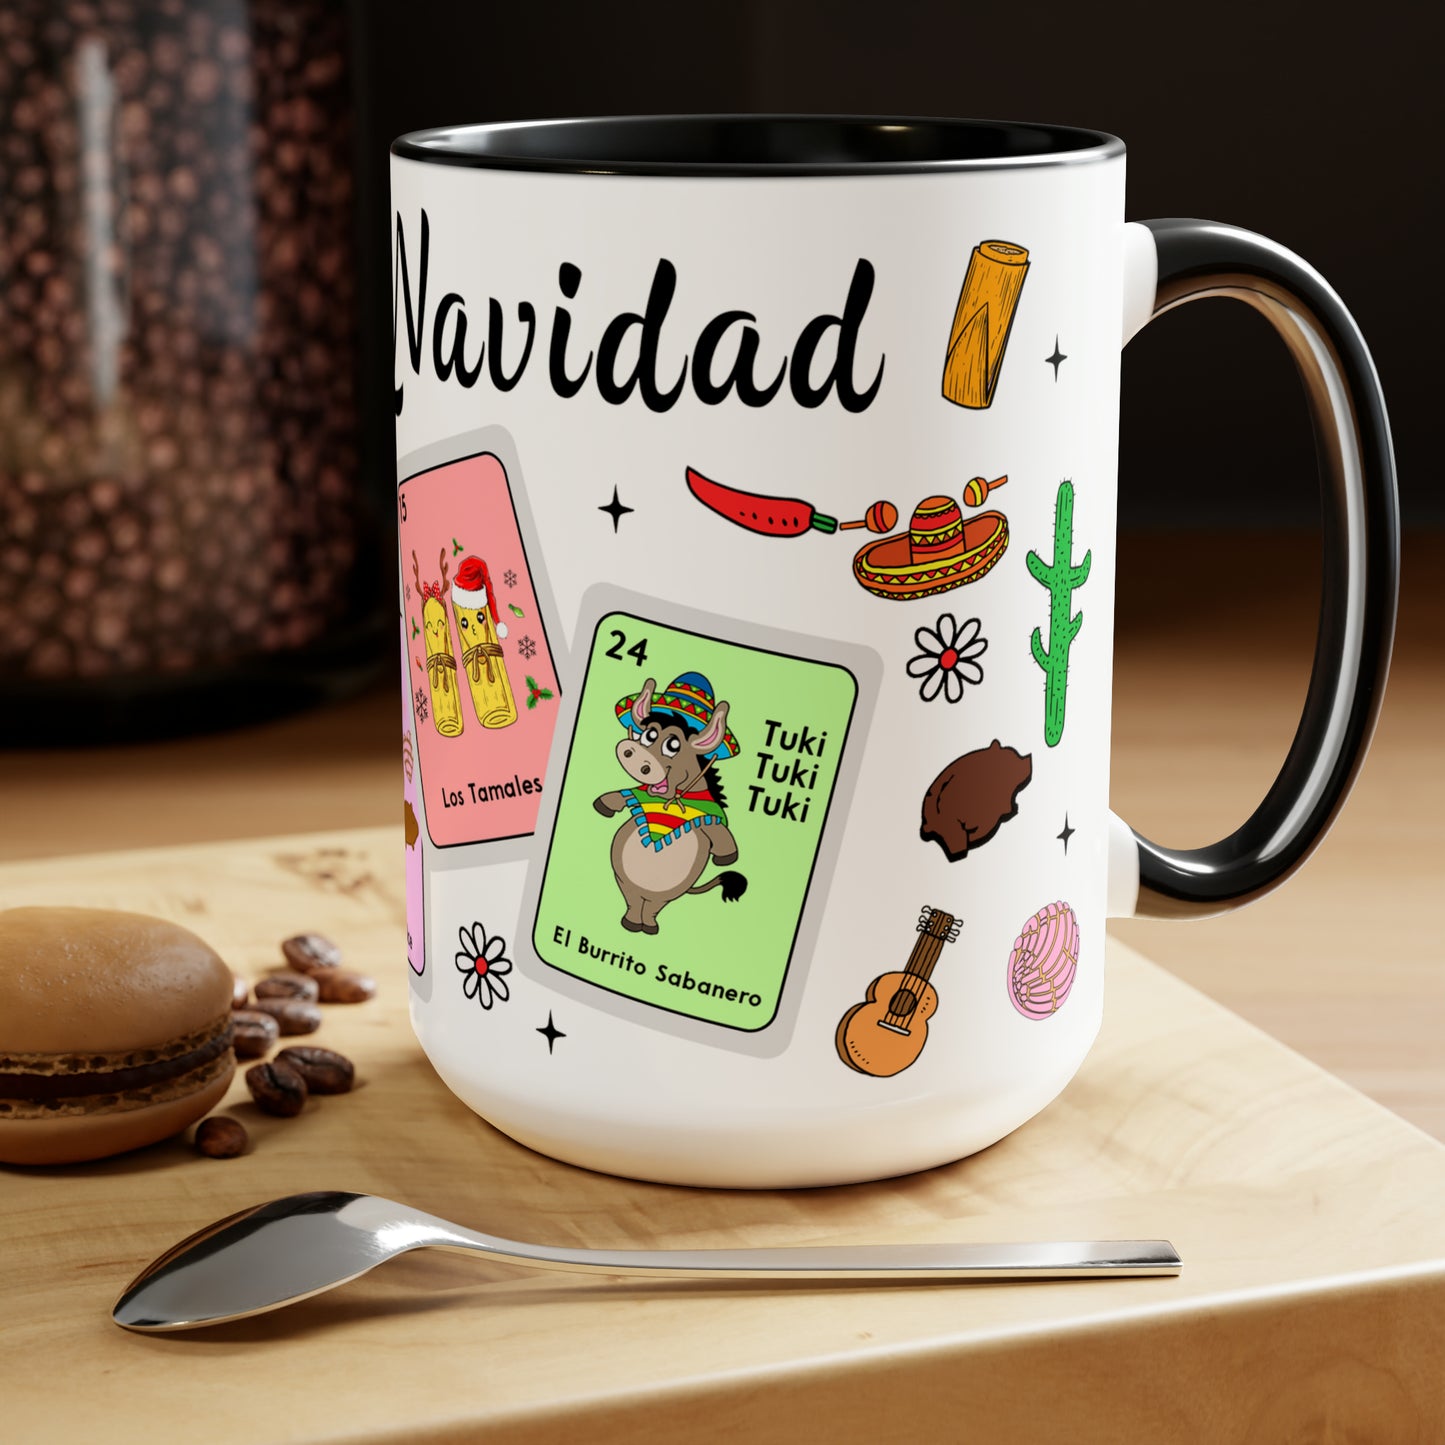 Feliz navidad Coffee Mugs, 15oz for Mexican family or Latin friend. Mexica cup for him or her. El burrito sabanero, los tamales, el Santa.